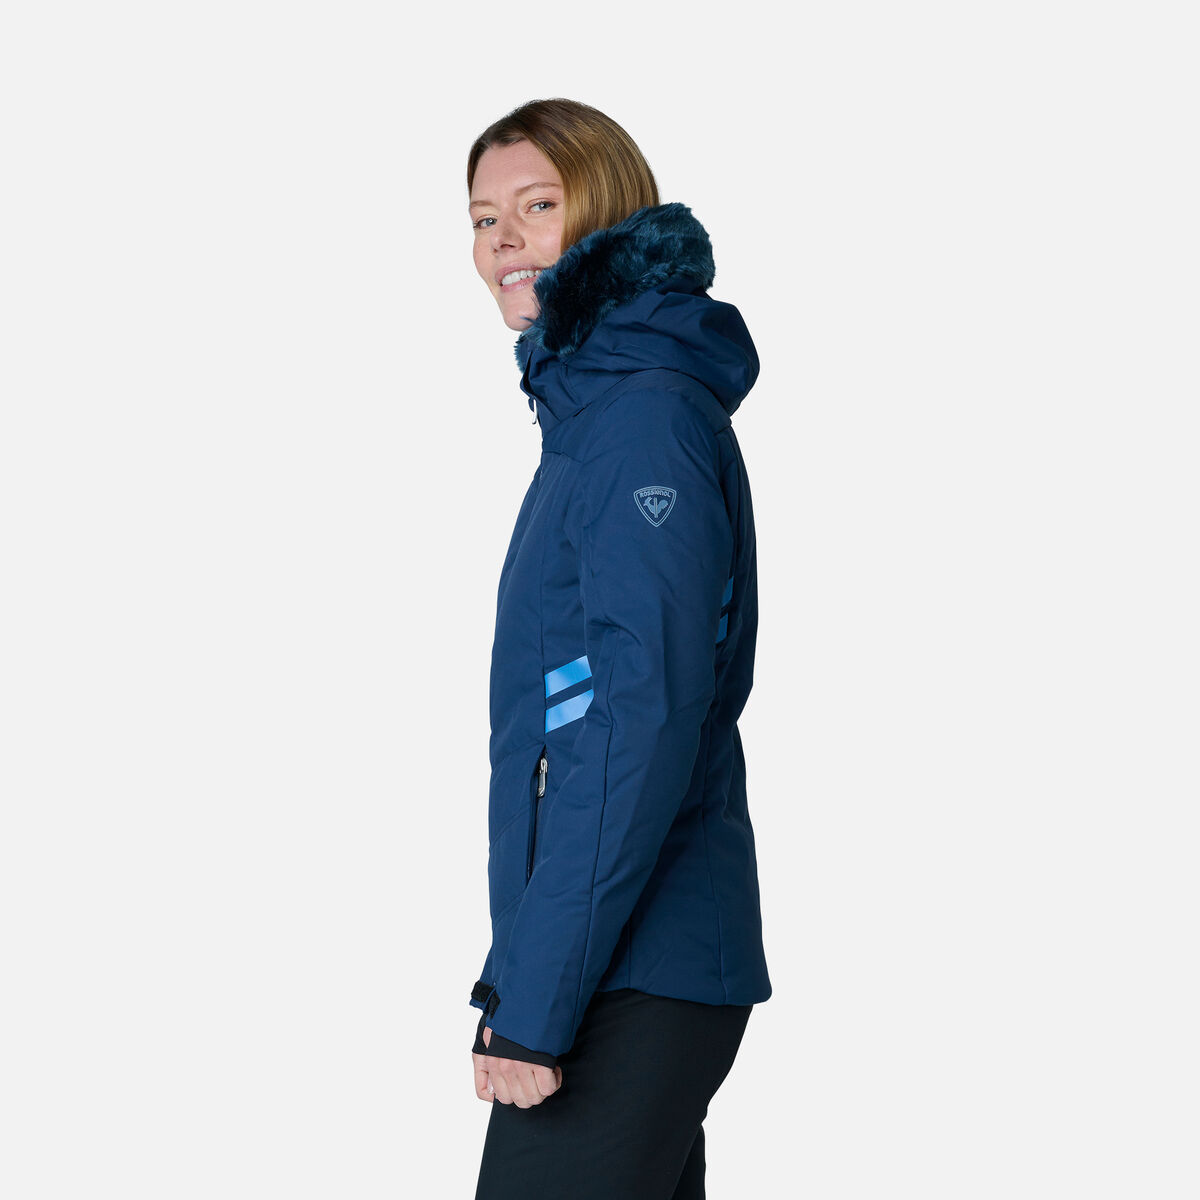 Rossignol Women's Ski Jacket Blue